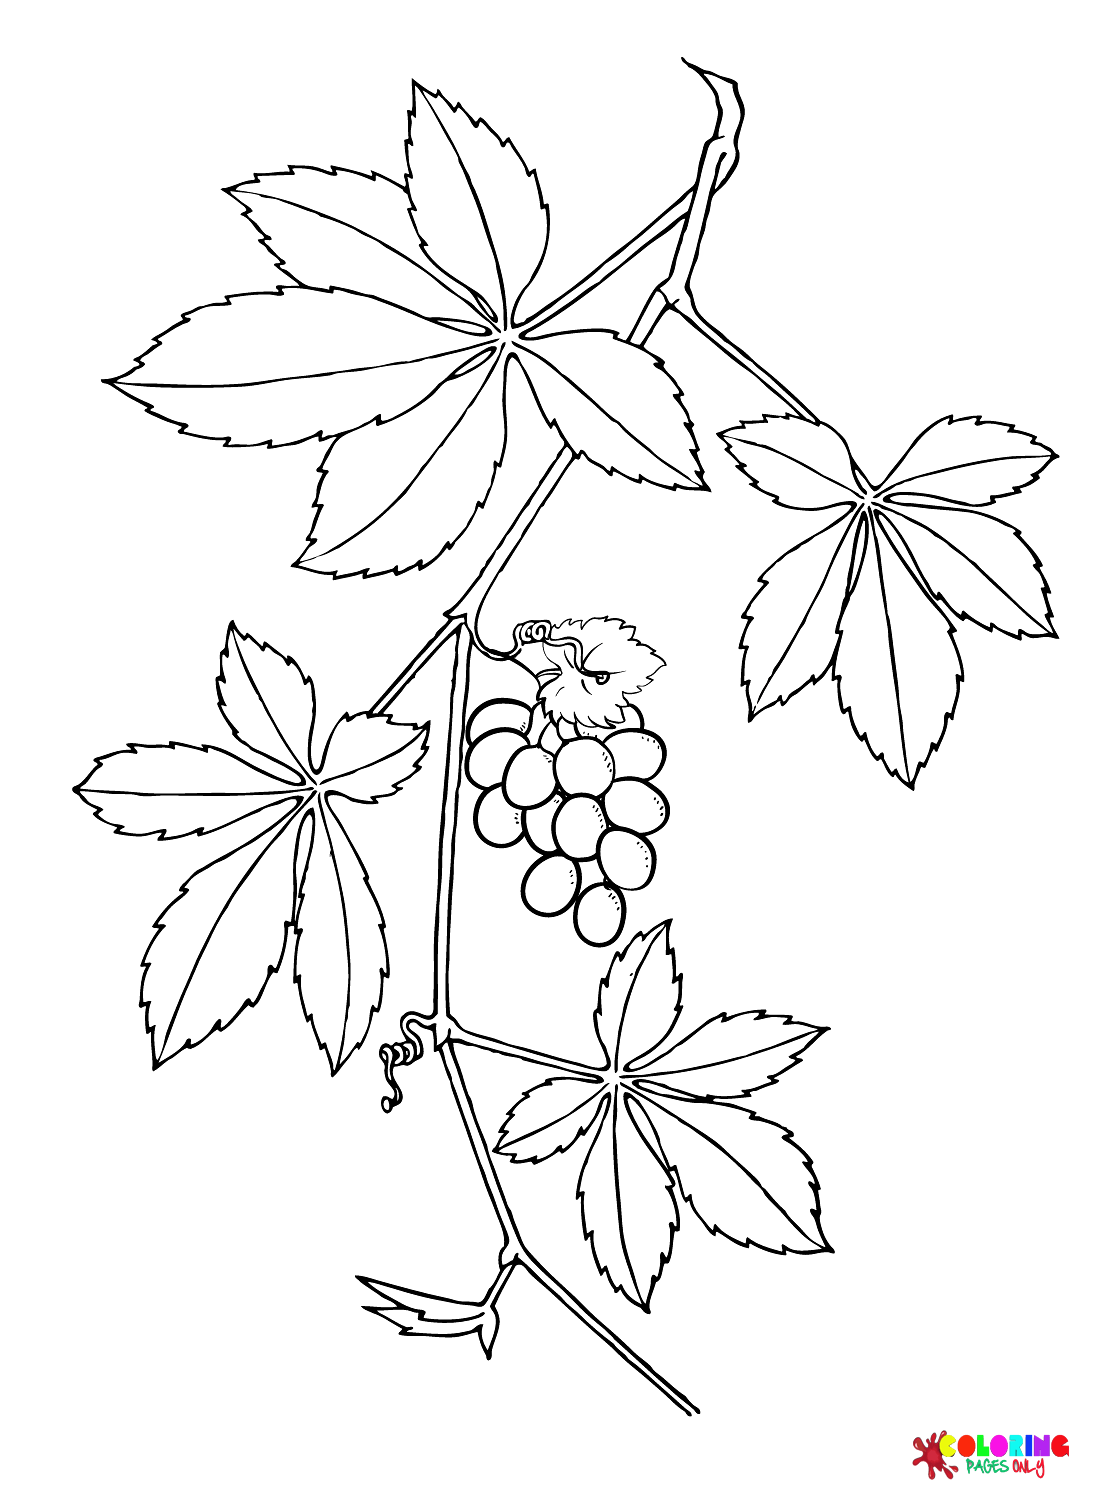 Página para colorir de folhas de uva trepadeira